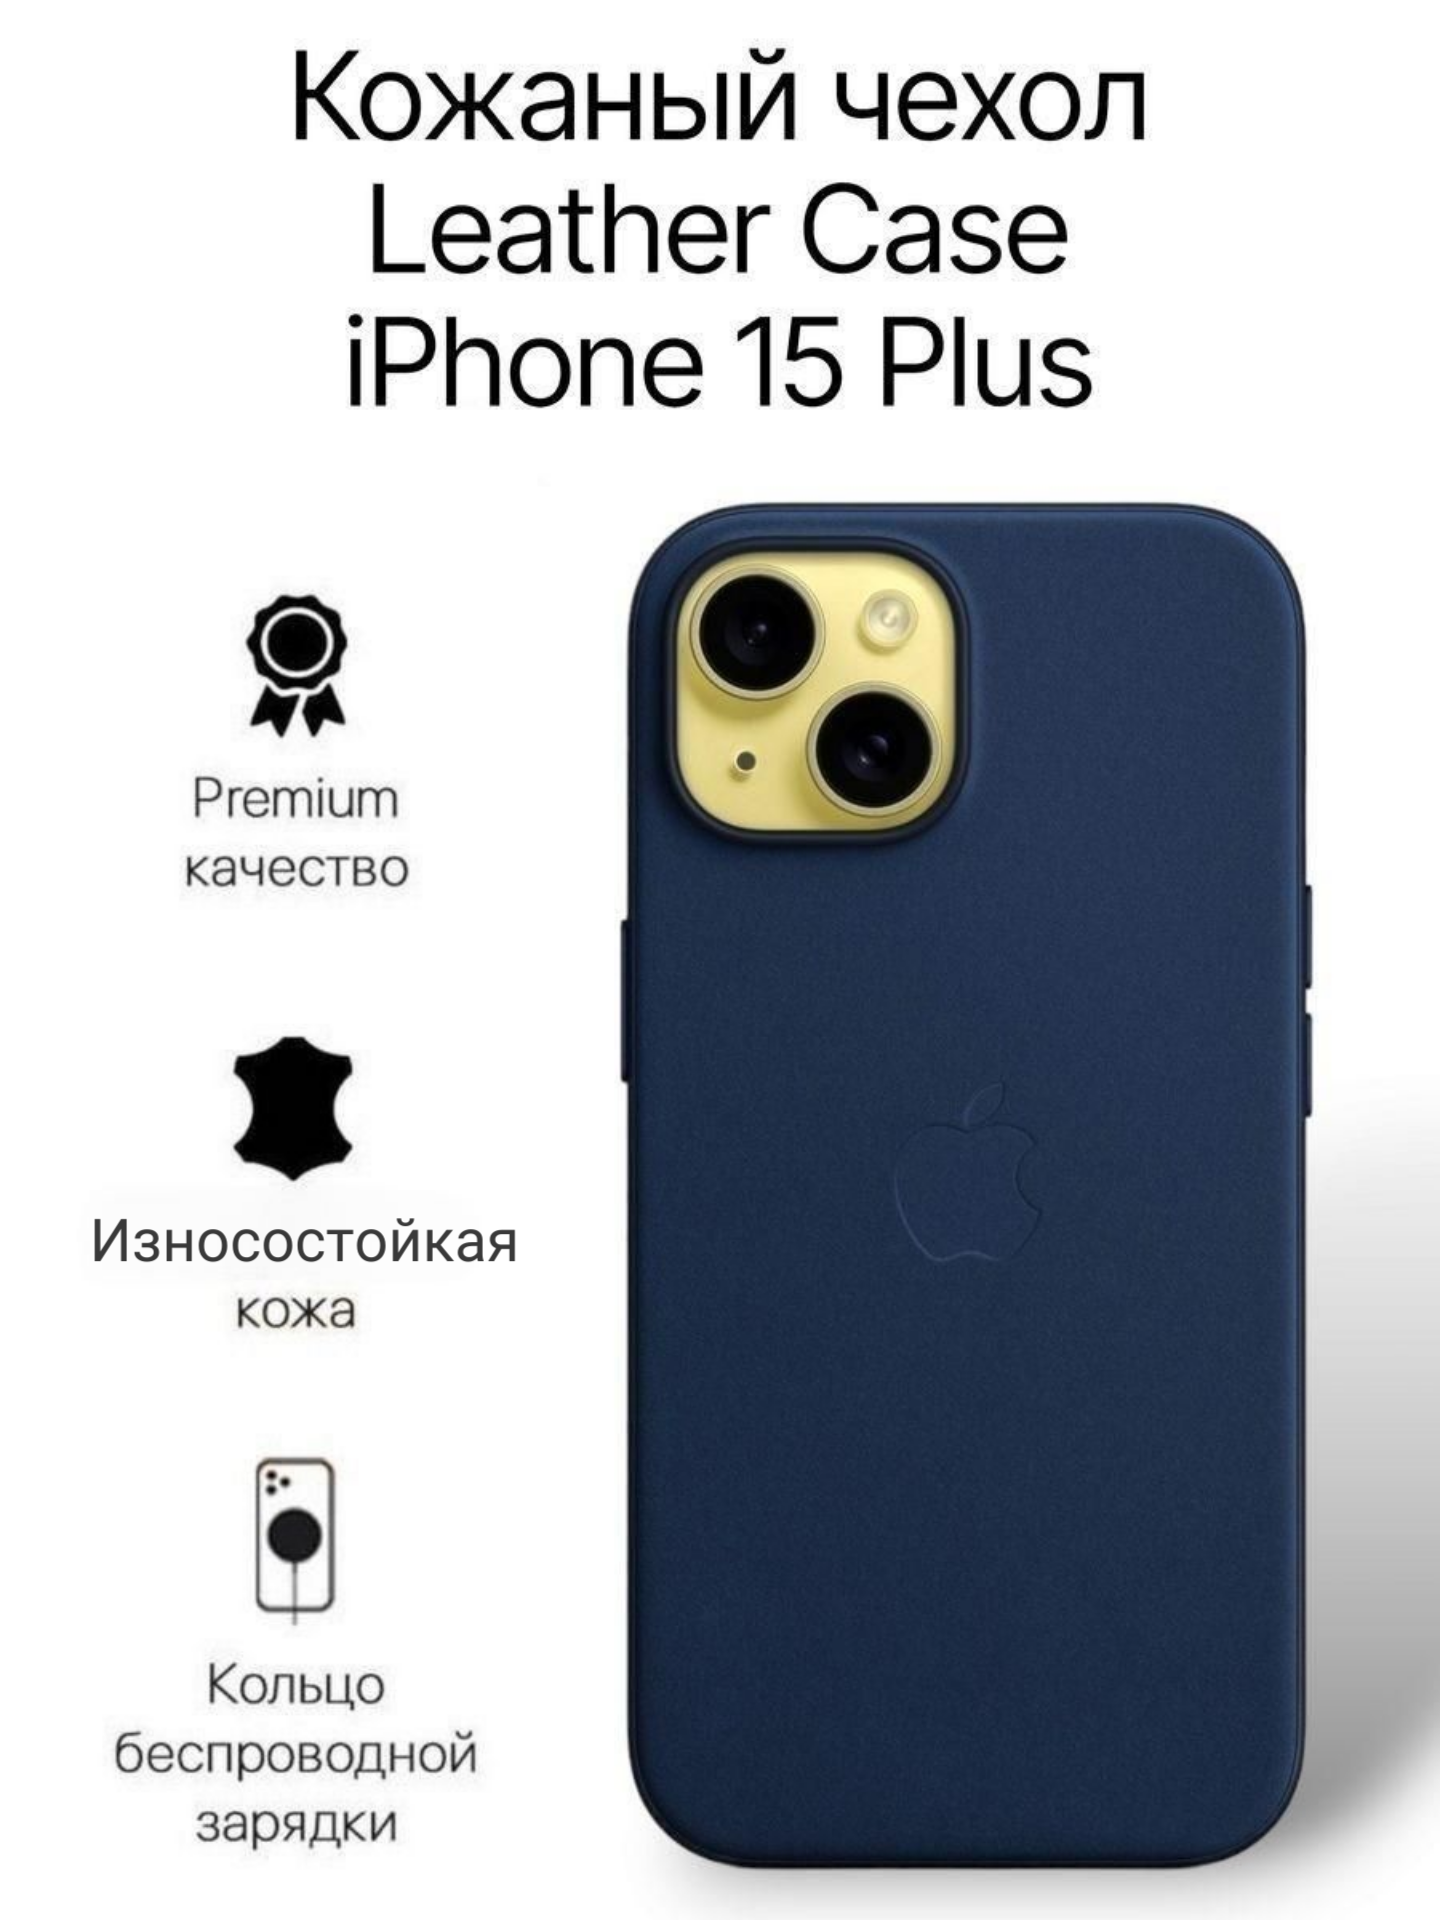 Кожаный чехол на iPhone 15 Plus с функцией MagSafe, темно синий - Ink